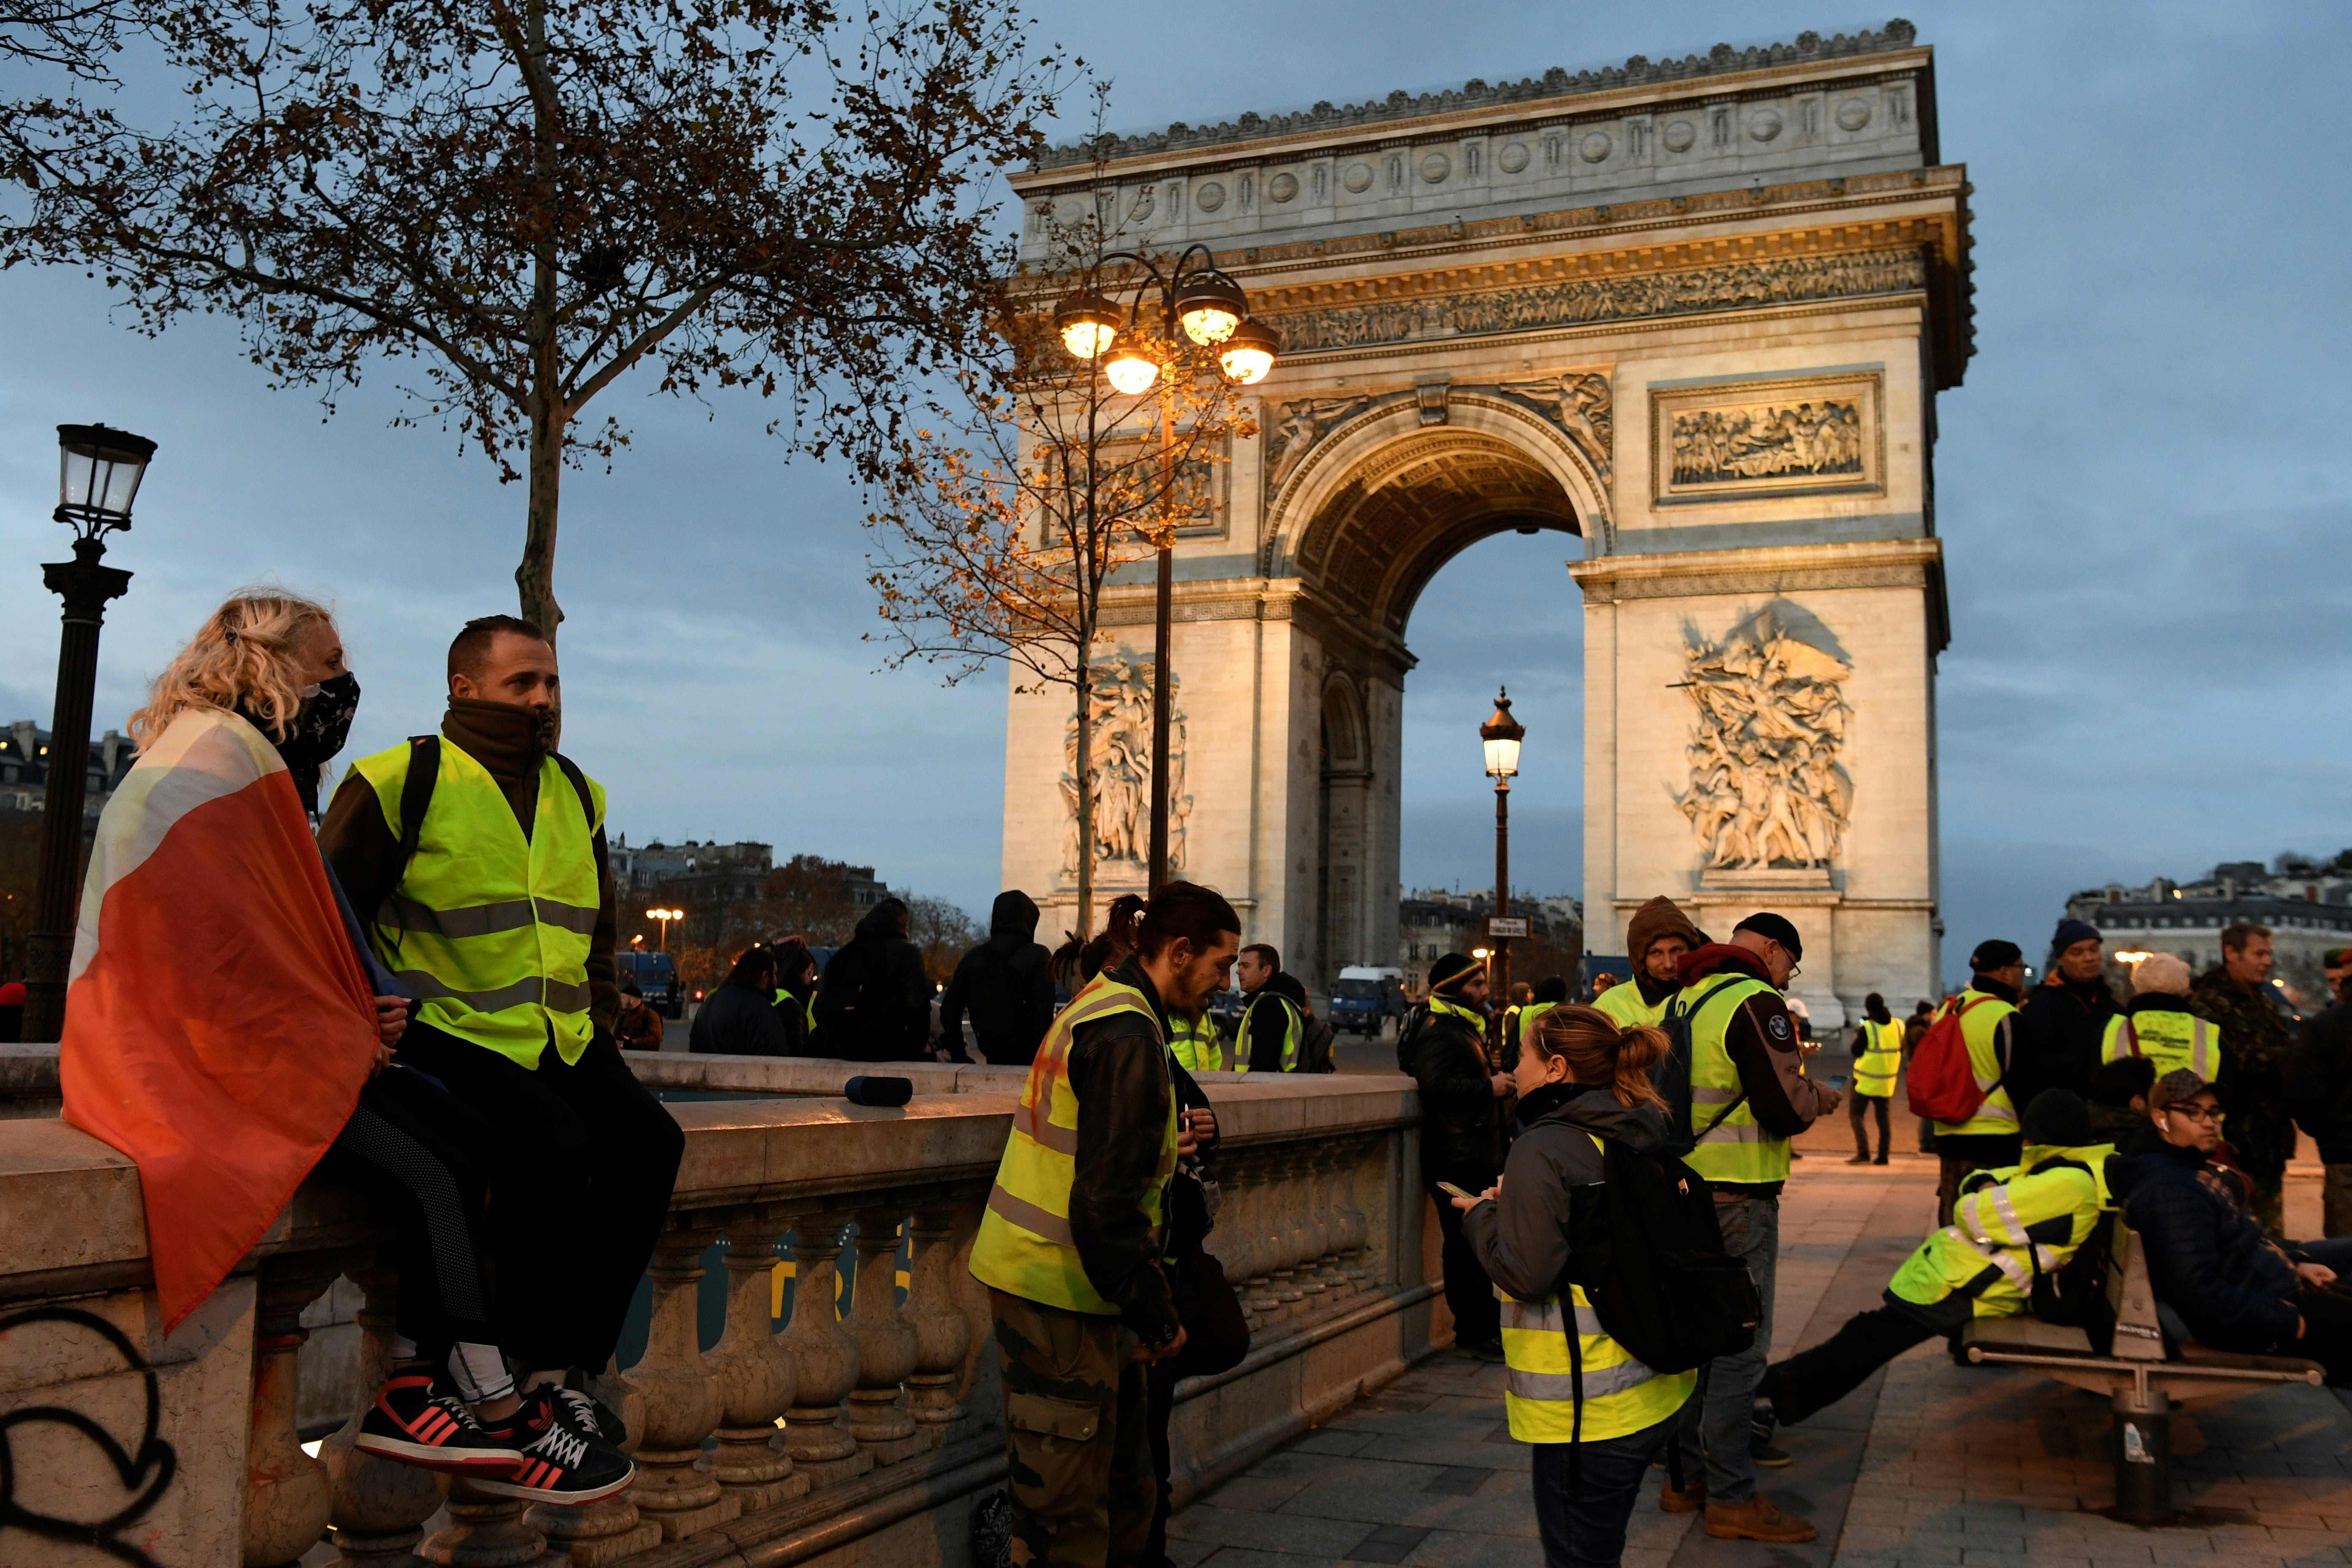 AAdan son dakika duyurusu: Fransada gösteri öncesi gözaltılar başladı